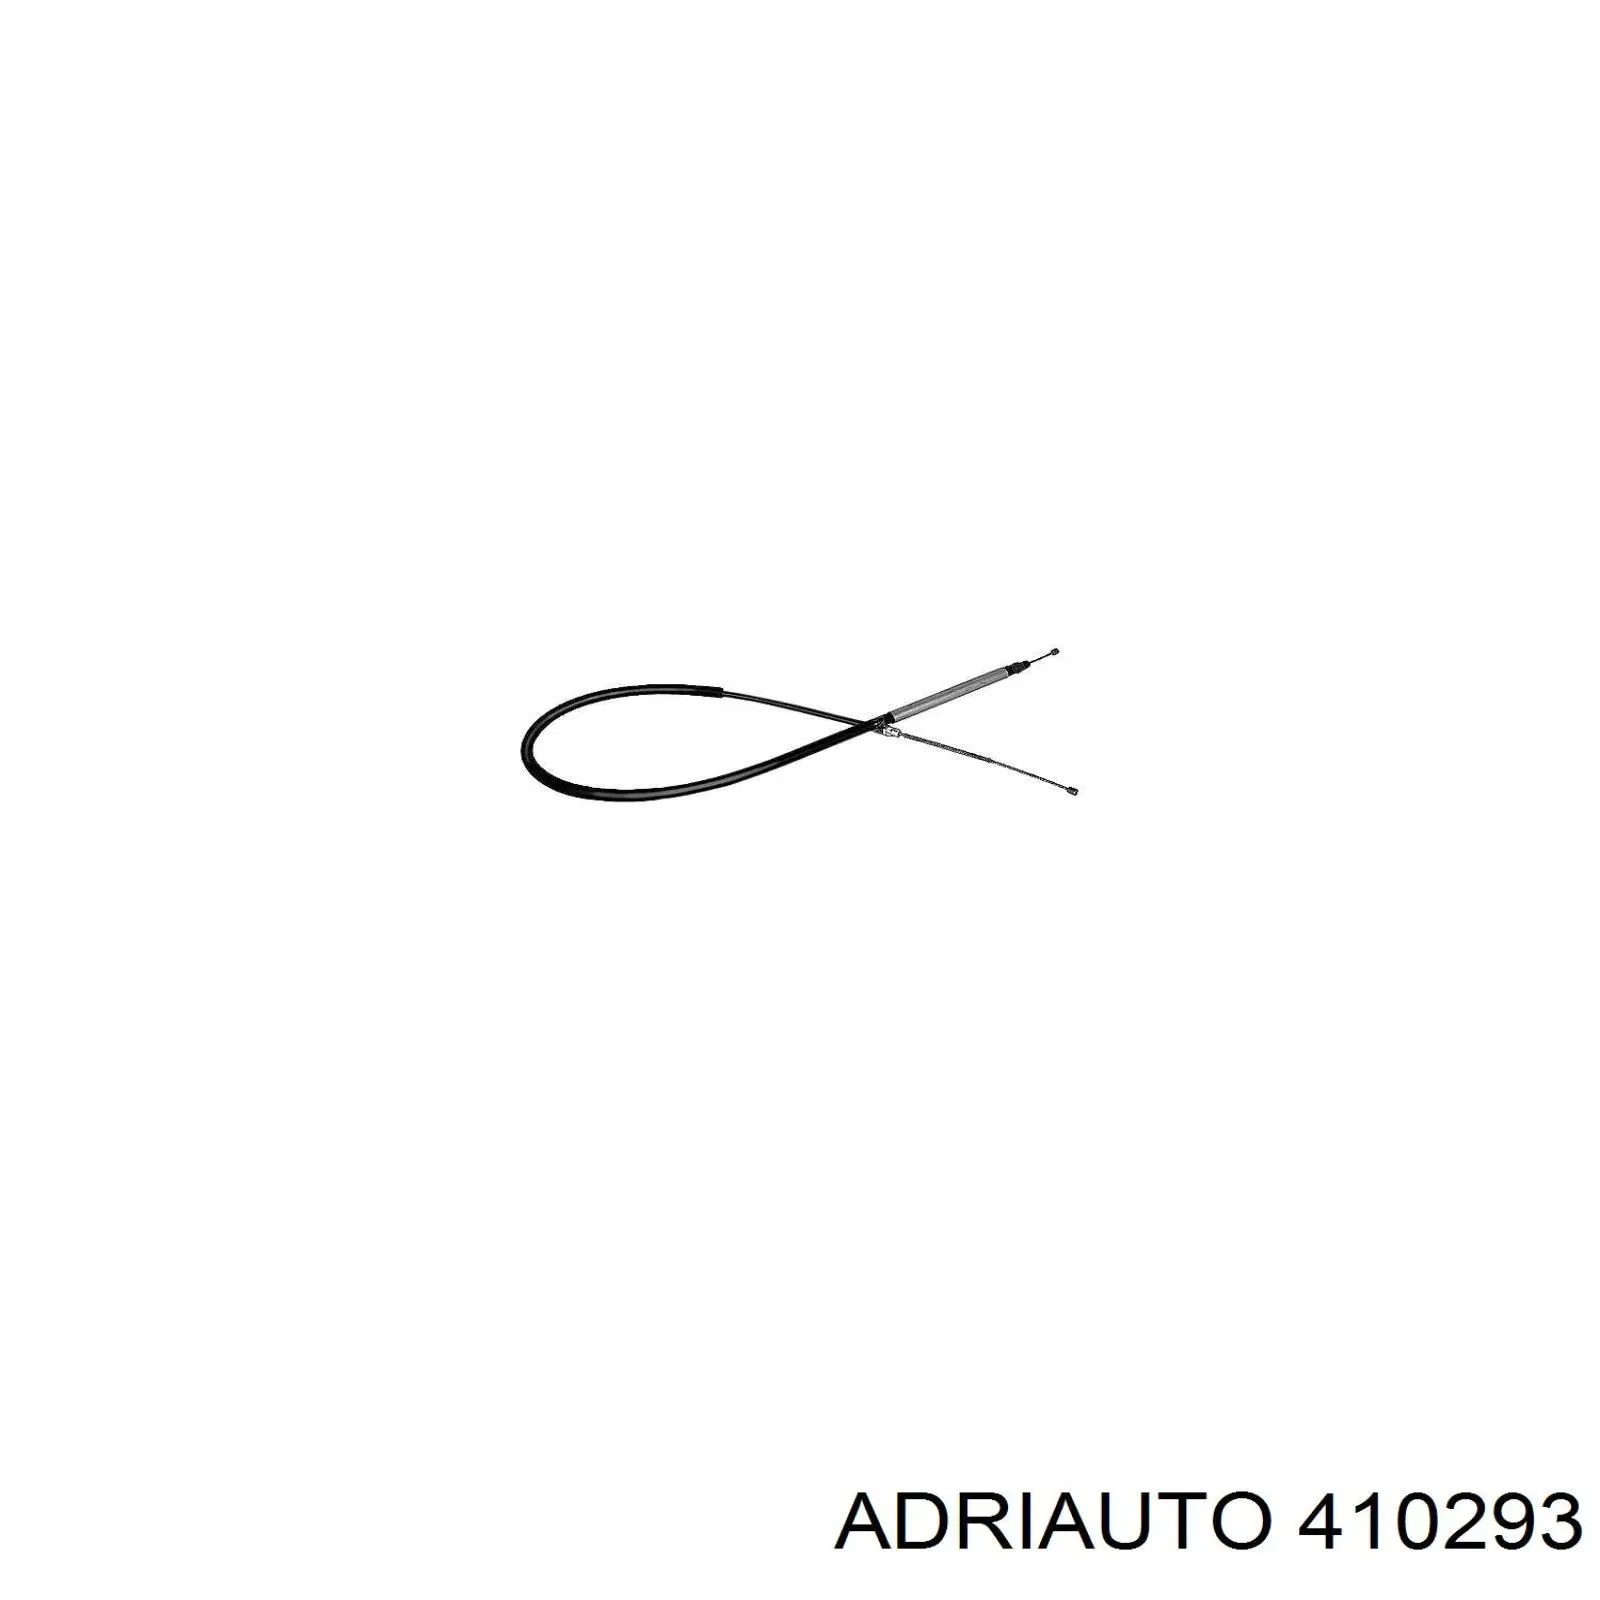 410293 Adriauto трос ручного тормоза задний правый/левый